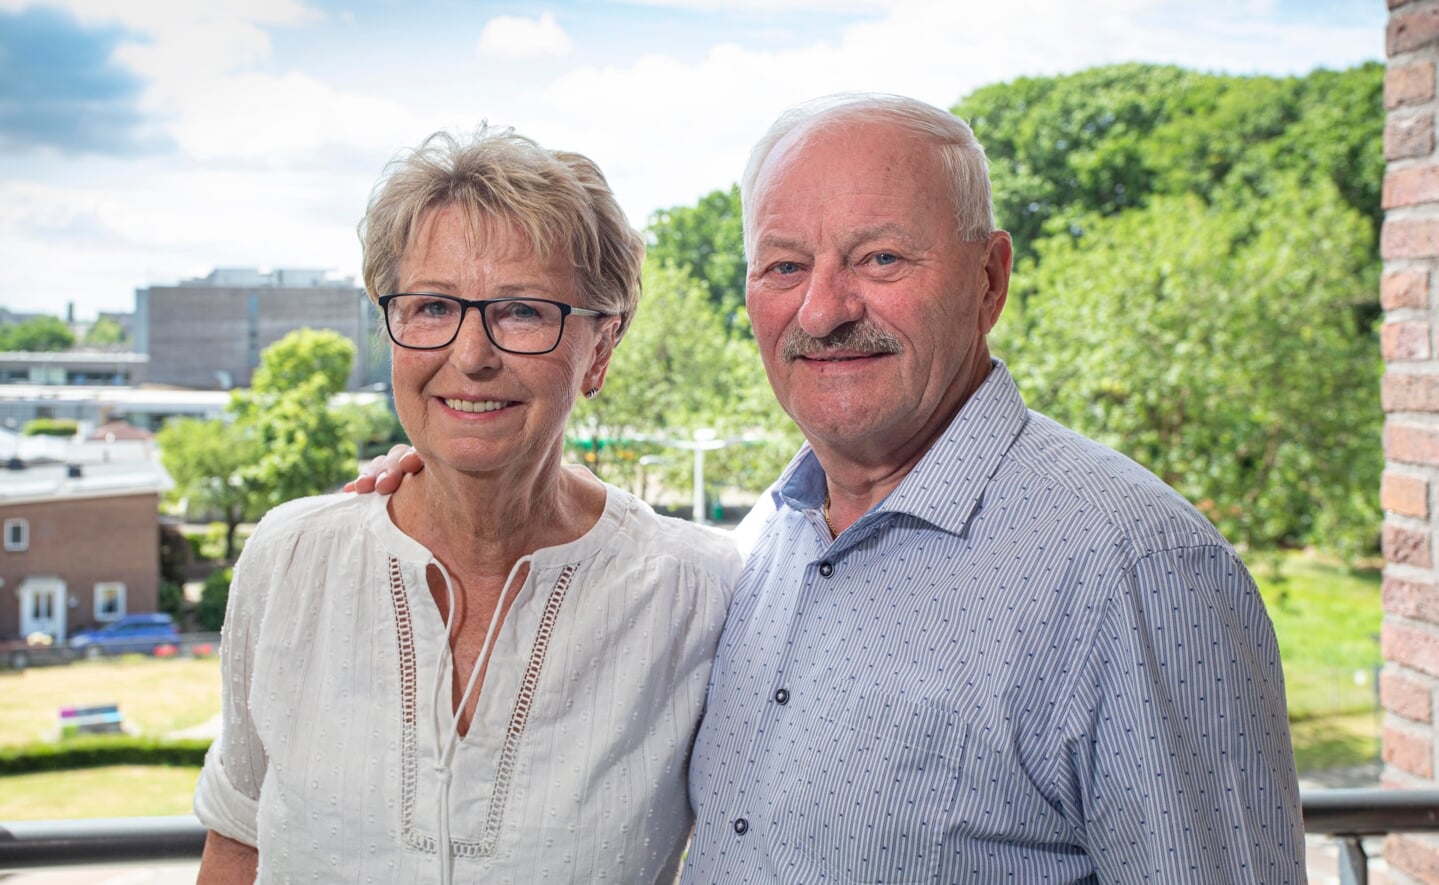 Marieke en Henk Habraken hebben het goed samen. Ze zijn dinsdag 28 juni vijftig jaar getrouwd.